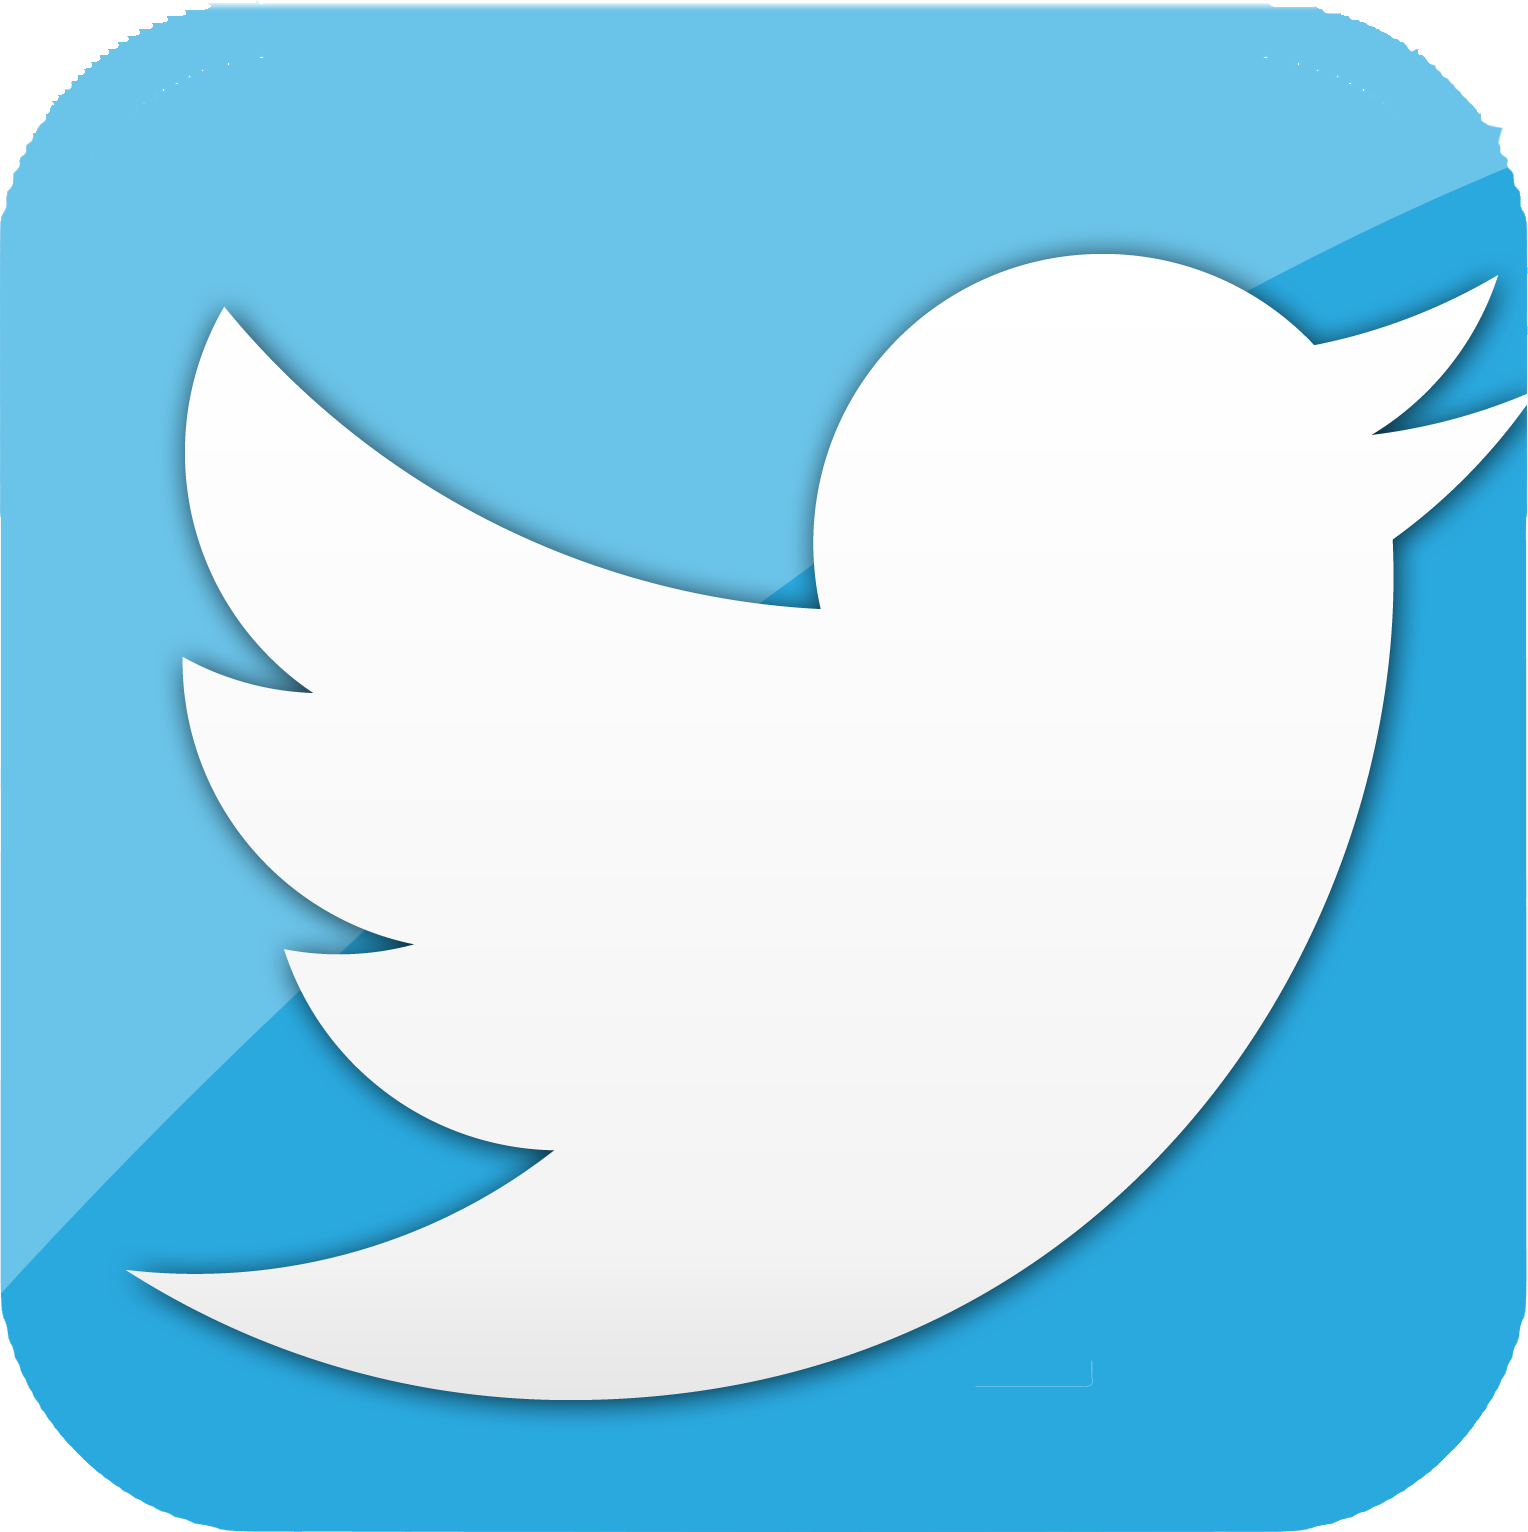 Displaying 16> Images For Twitter Bird Logo #26 Twitter Bird Logo ...